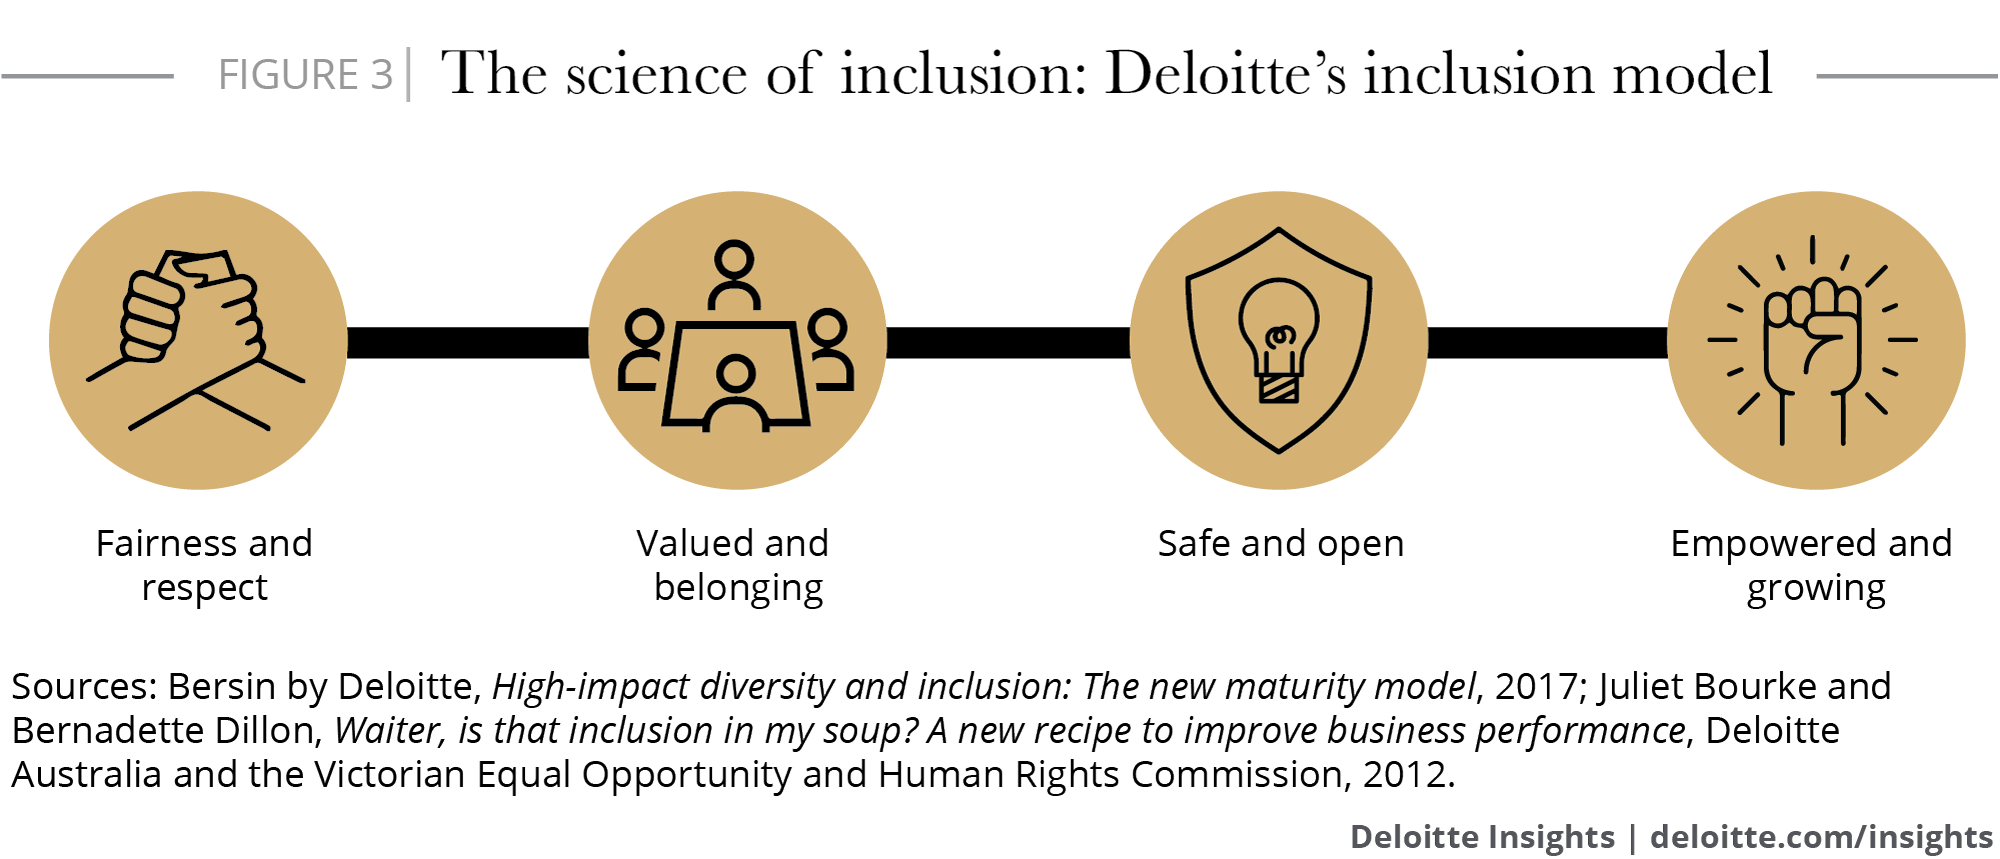 The science of inclusion: Deloitte’s inclusion model